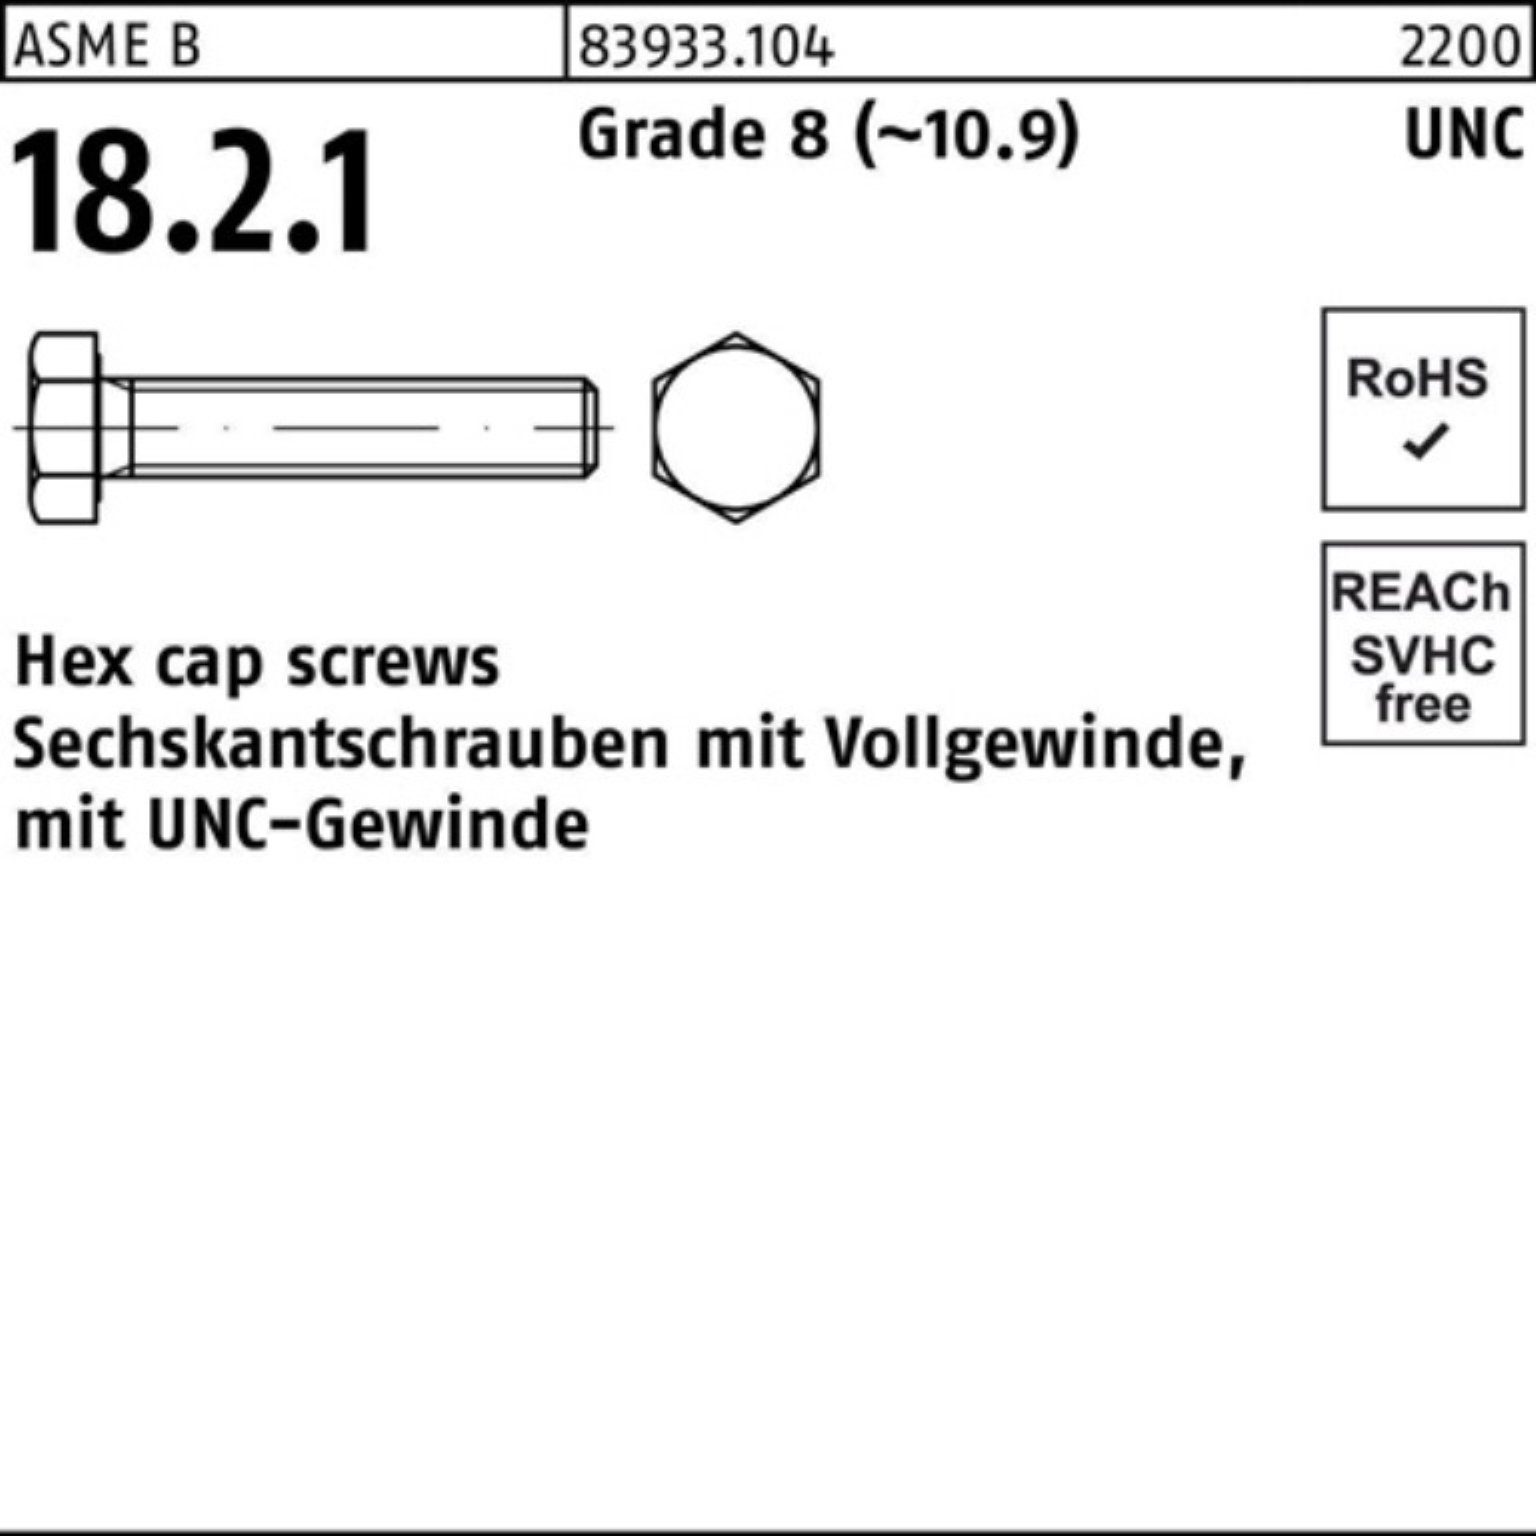 Reyher Sechskantschraube 100er Pack Sechskantschraube R 83933 UNC-Gewinde VG 3/4x 1 1/4 Grade 8